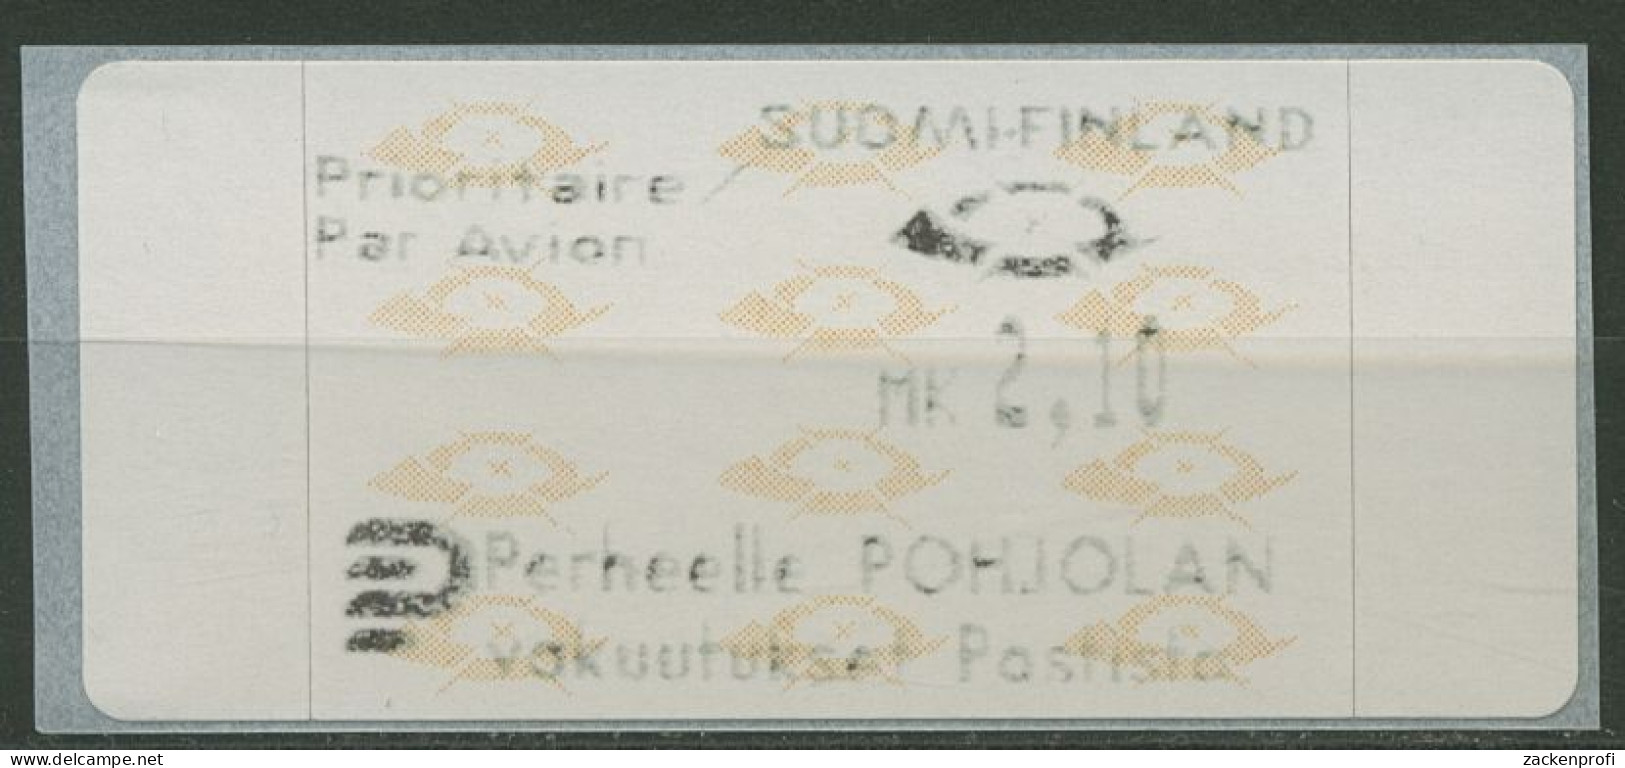 Finnland Automatenmarken 1992 Posthörner Einzelwert ATM 12.3 Z6 Postfrisch - Machine Labels [ATM]